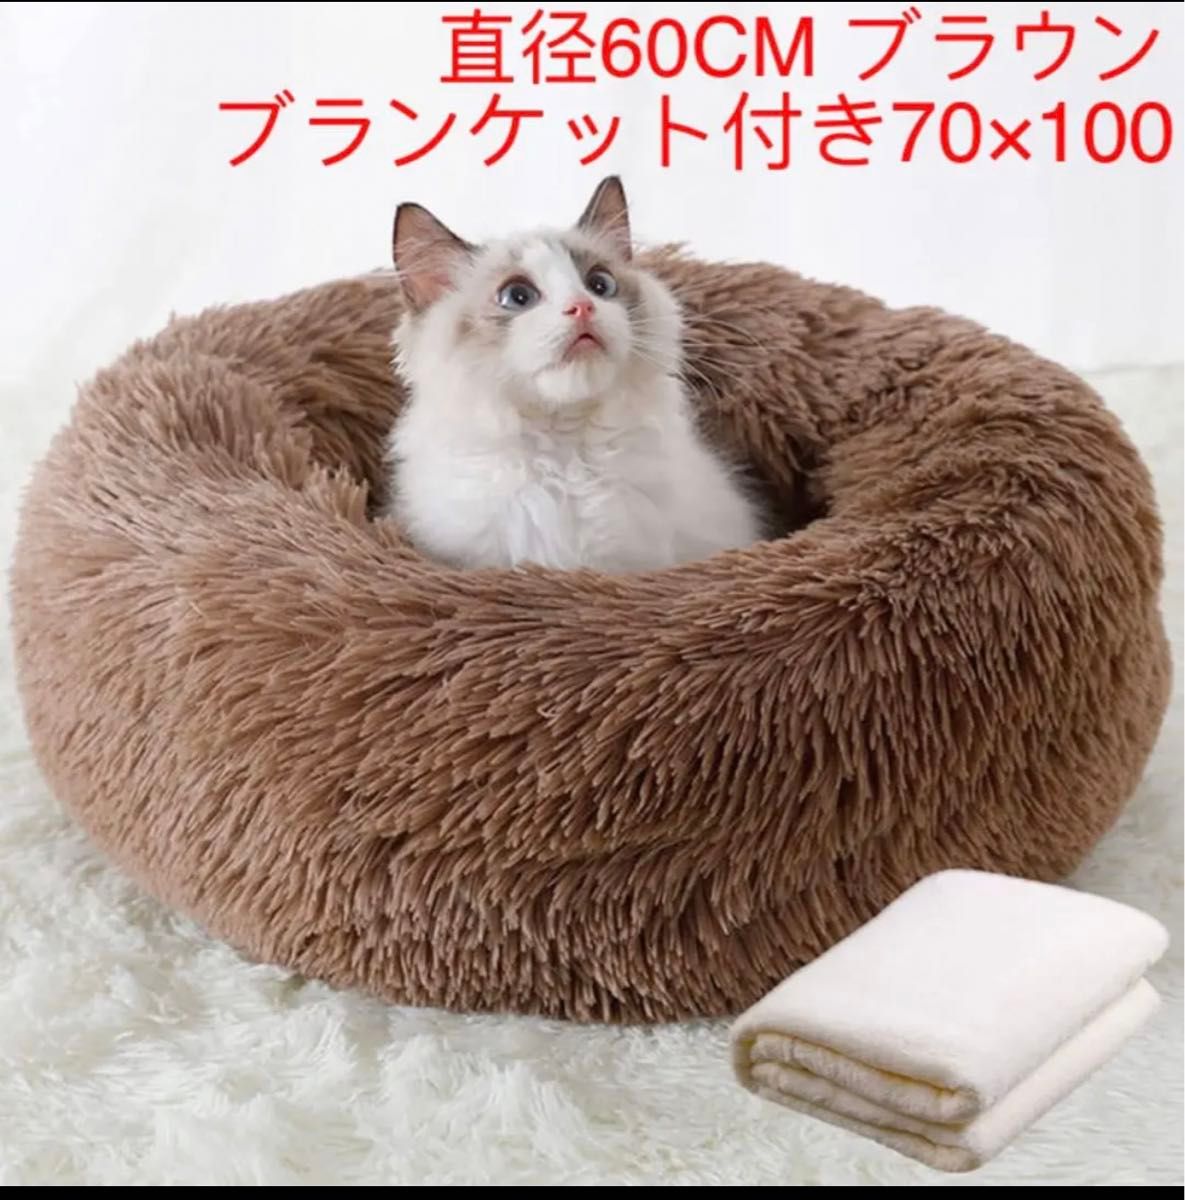 ペットベッド猫・犬用 ふわふわ 可愛い ブランケット付き 丸型 60CM ブラウン 丸型ふわふわ 猫ベッド クッション